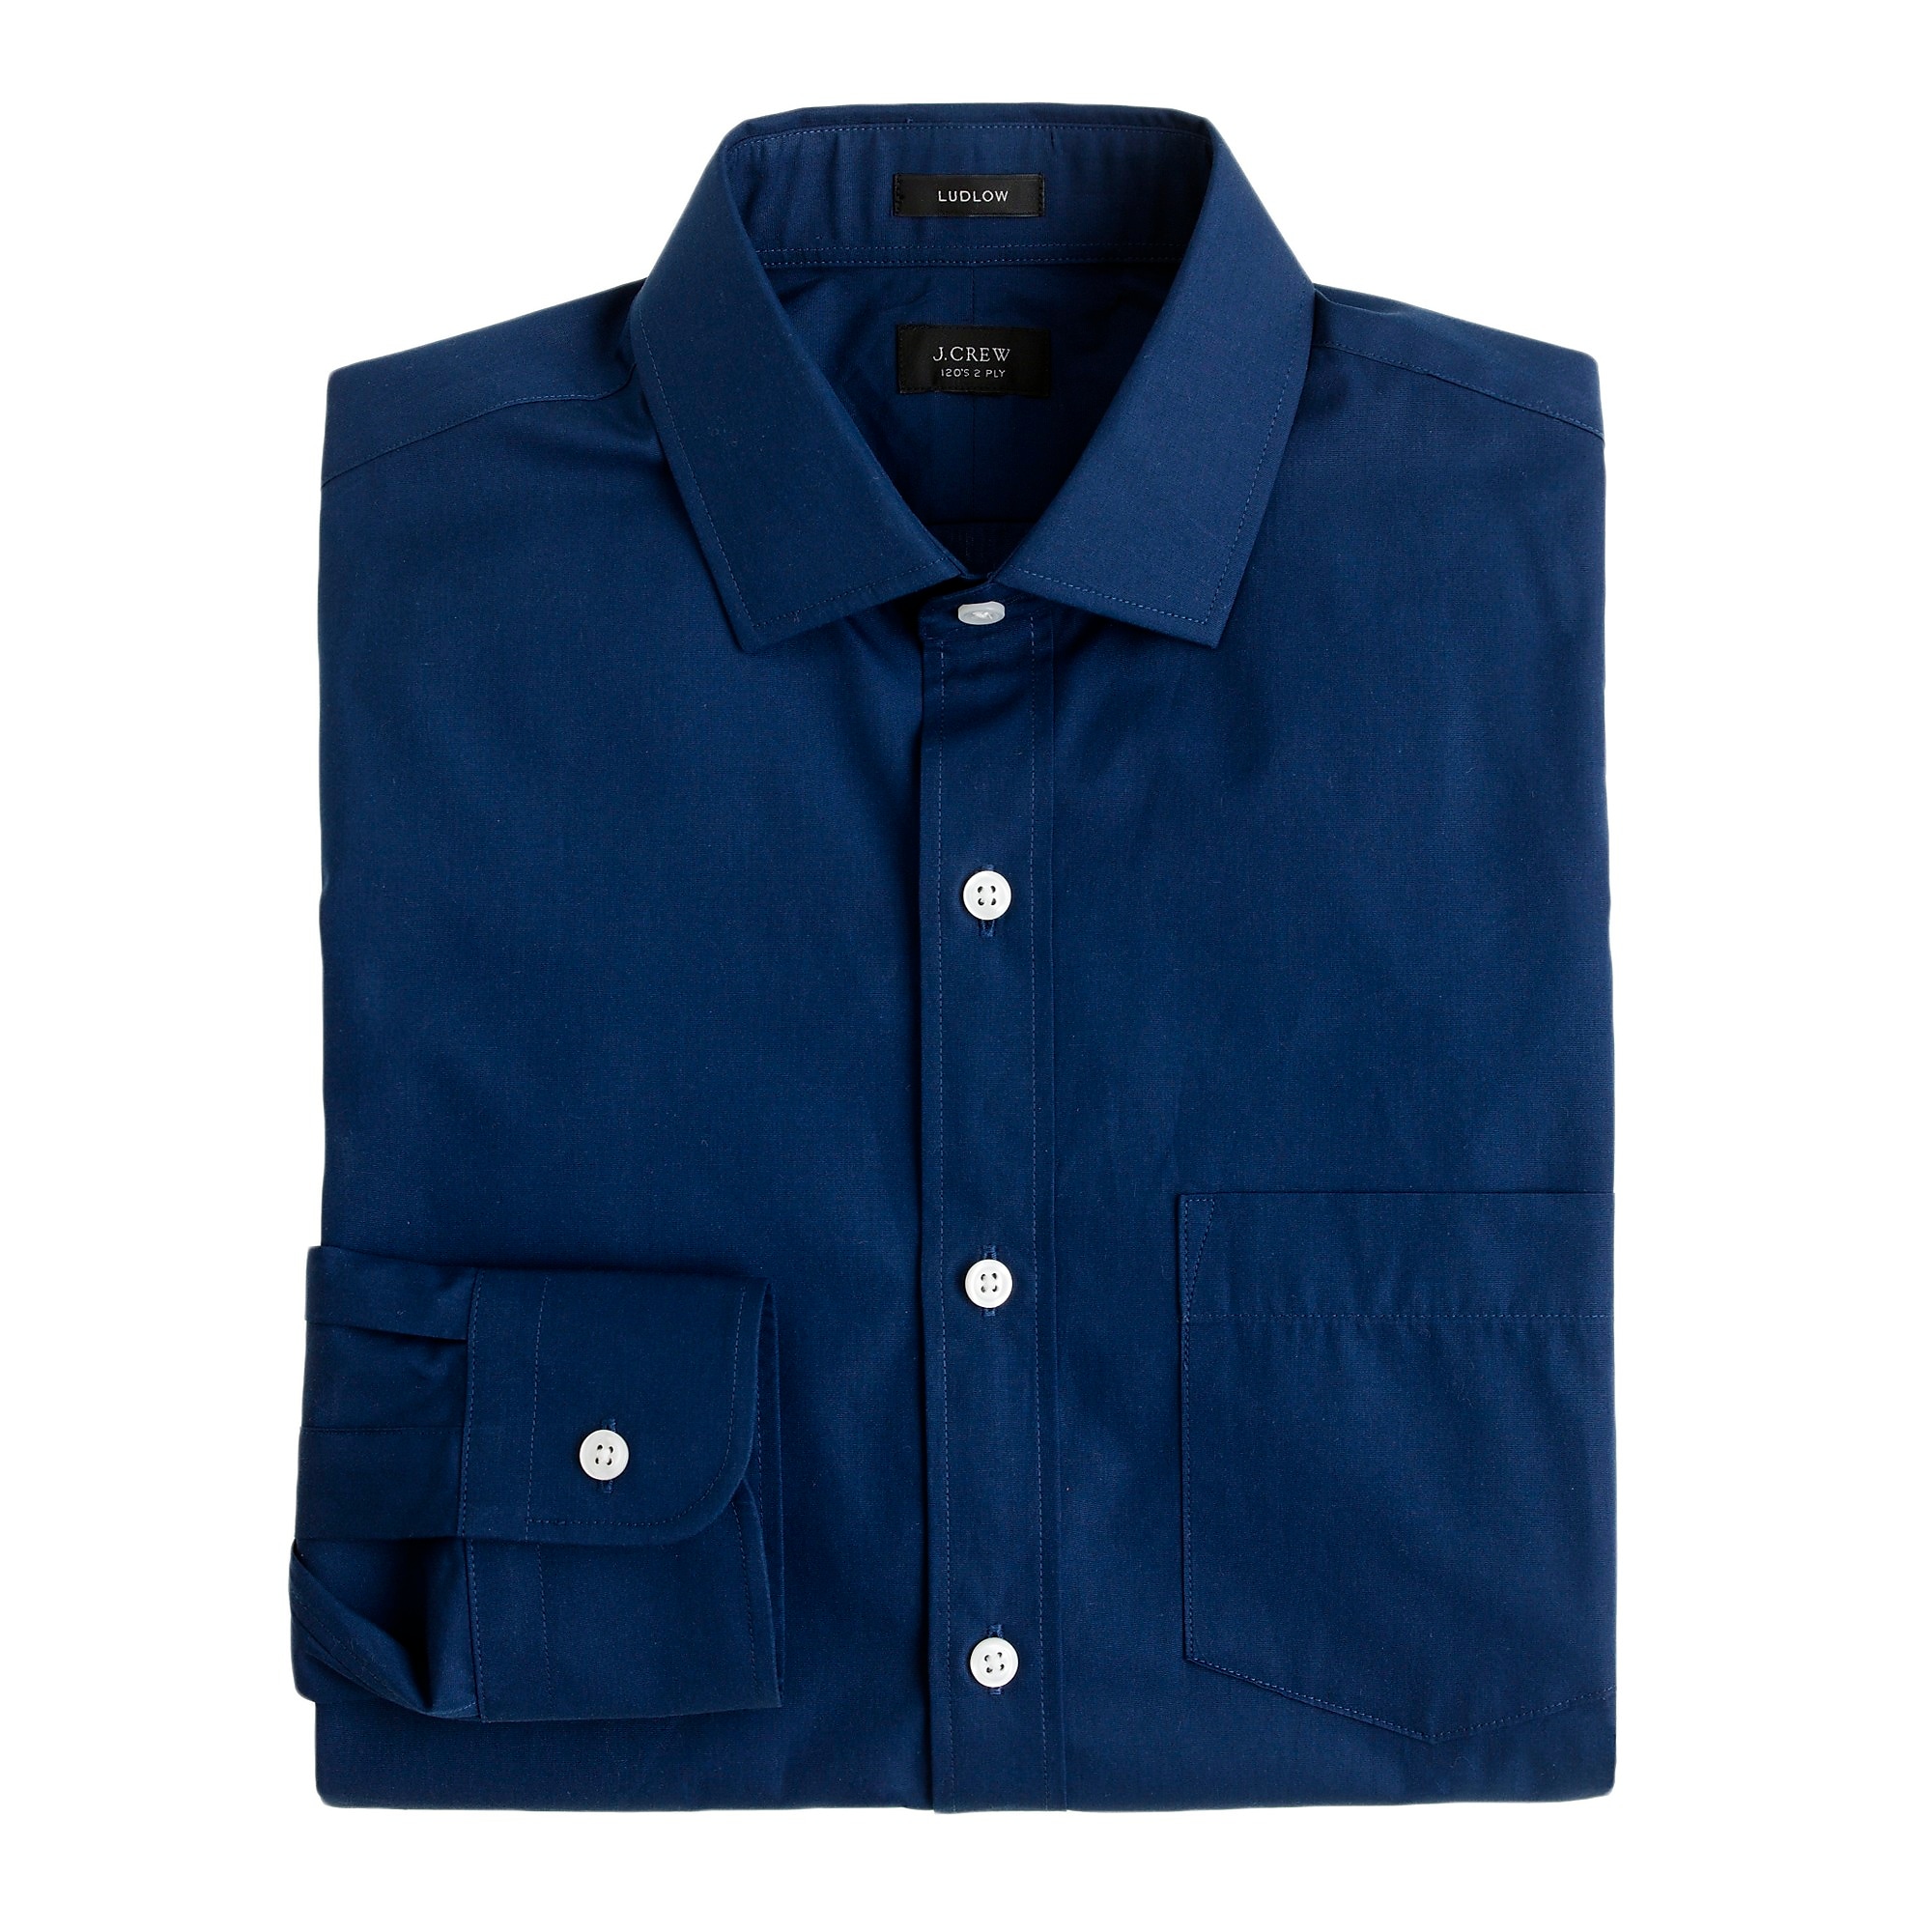 Ludlow spread-collar shirt in midnight poplin : | J.Crew